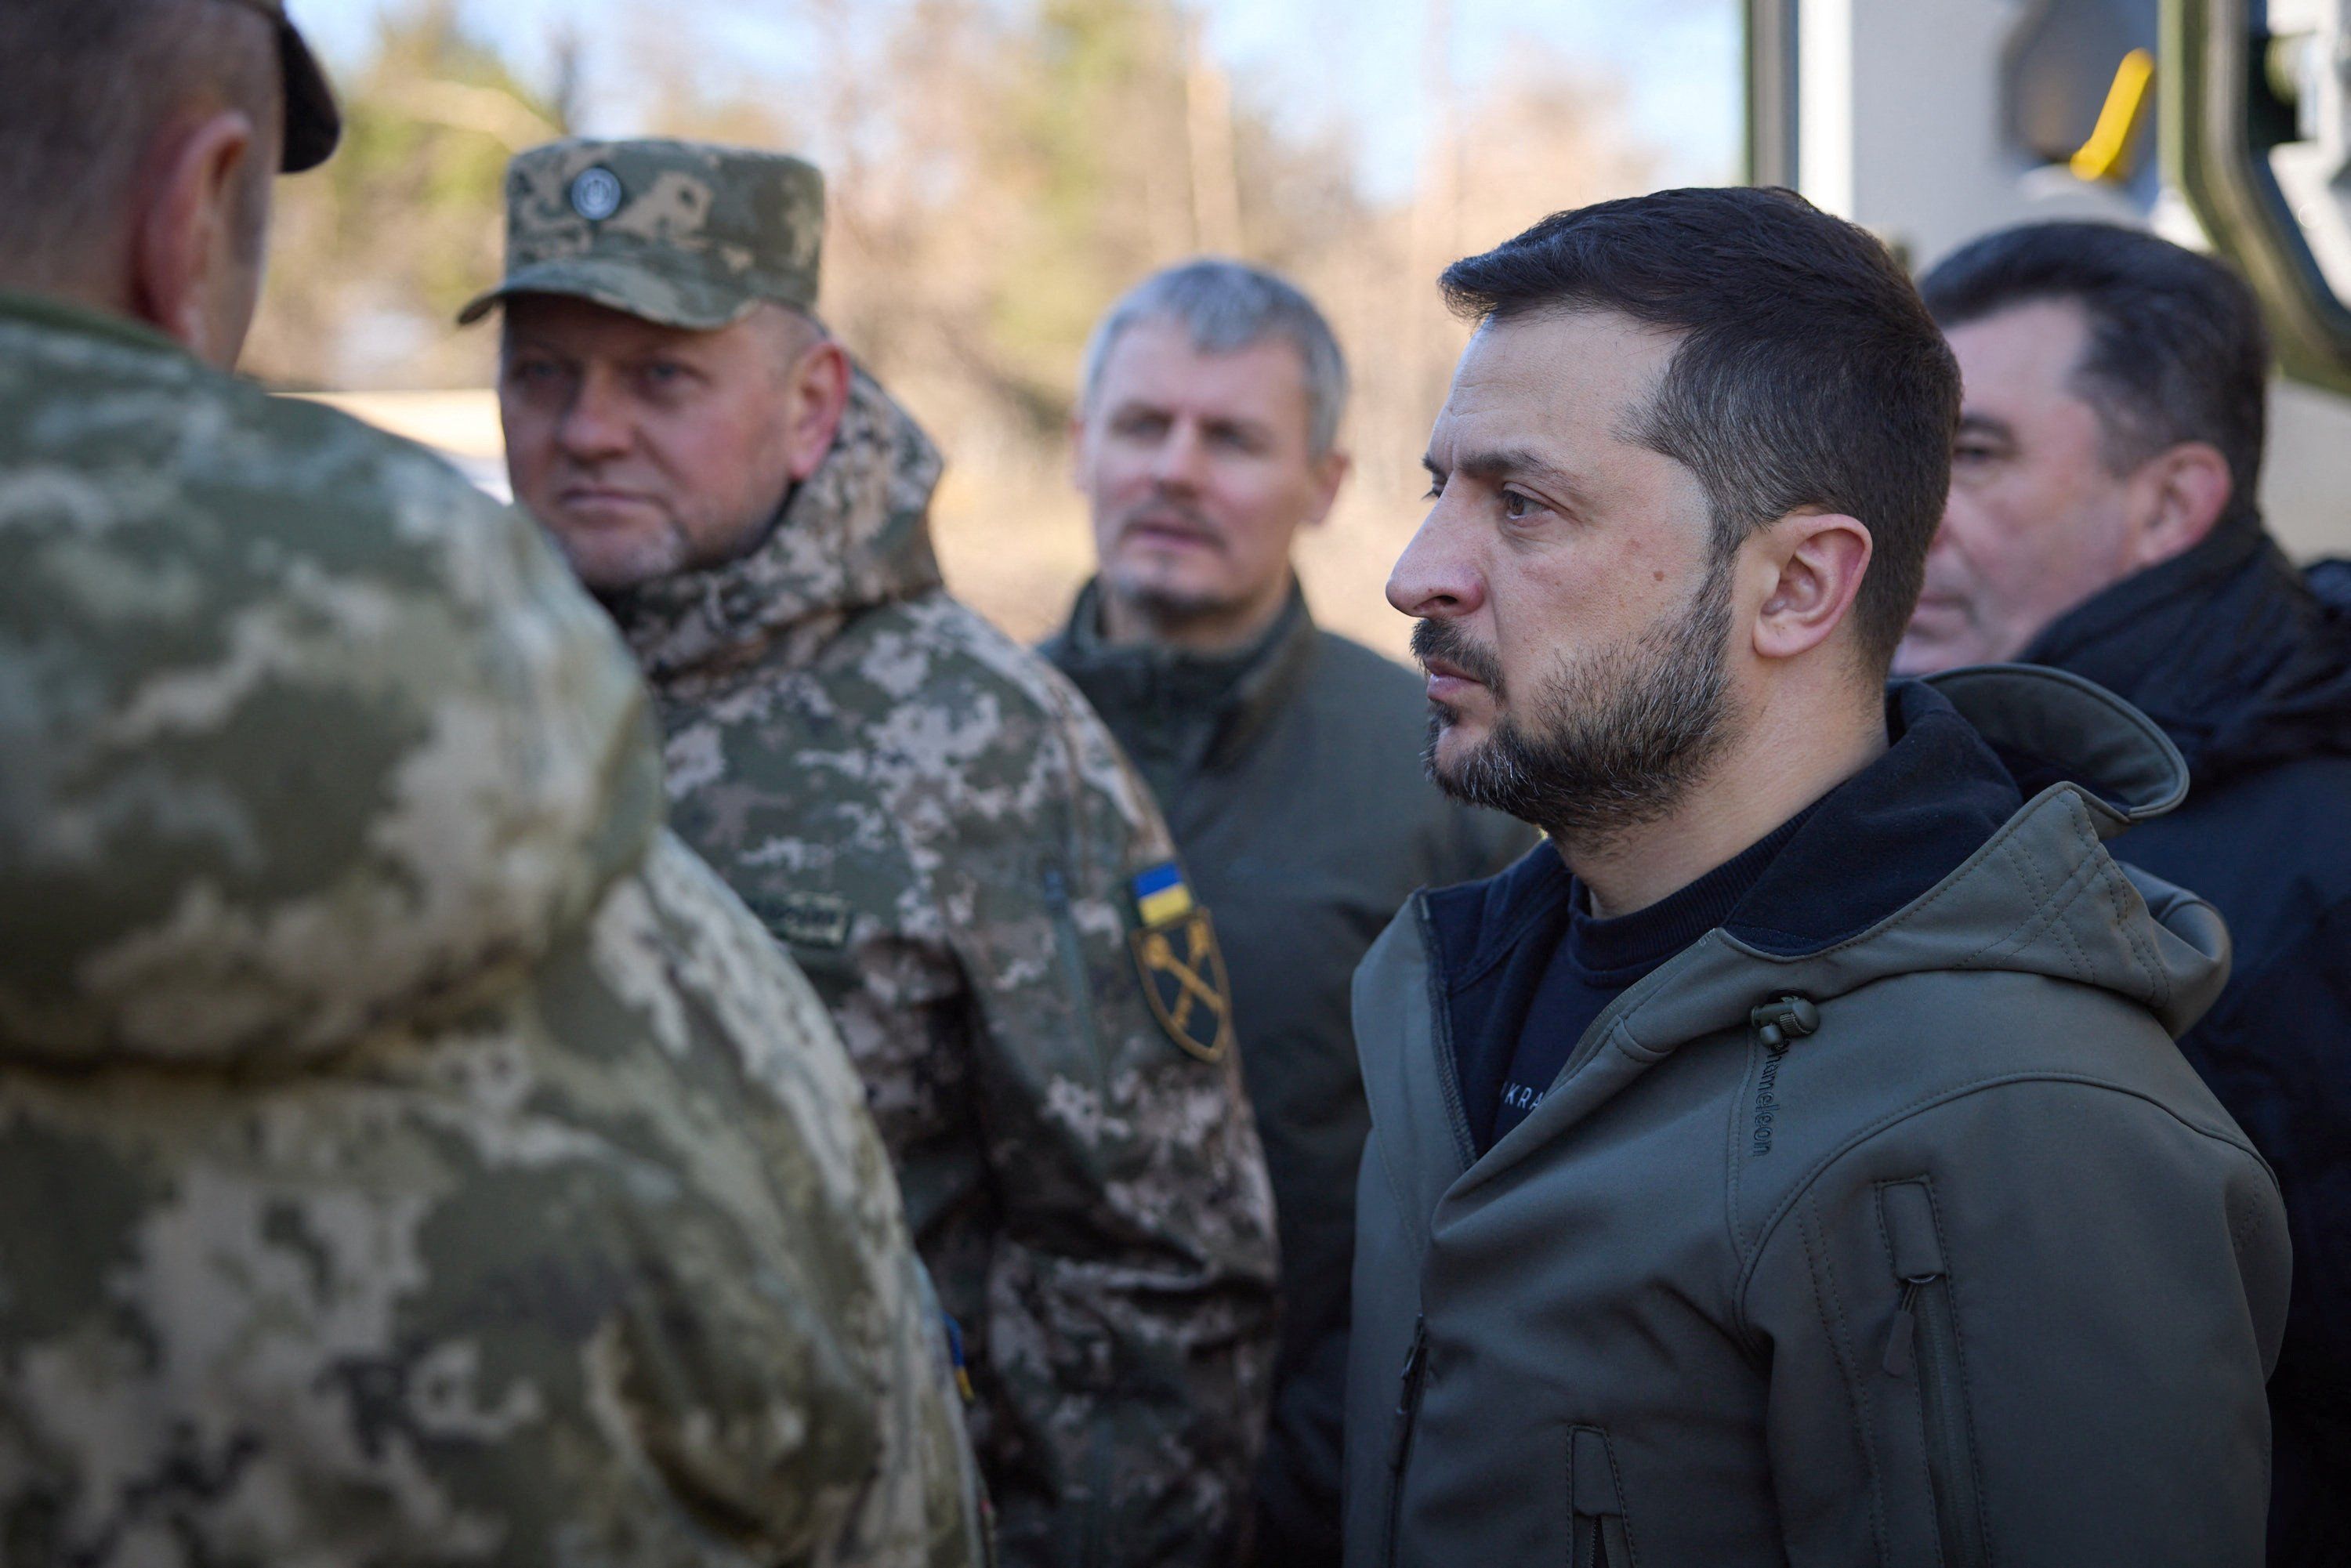 Are divisions emerging in Ukraine's politics? - GZERO Media